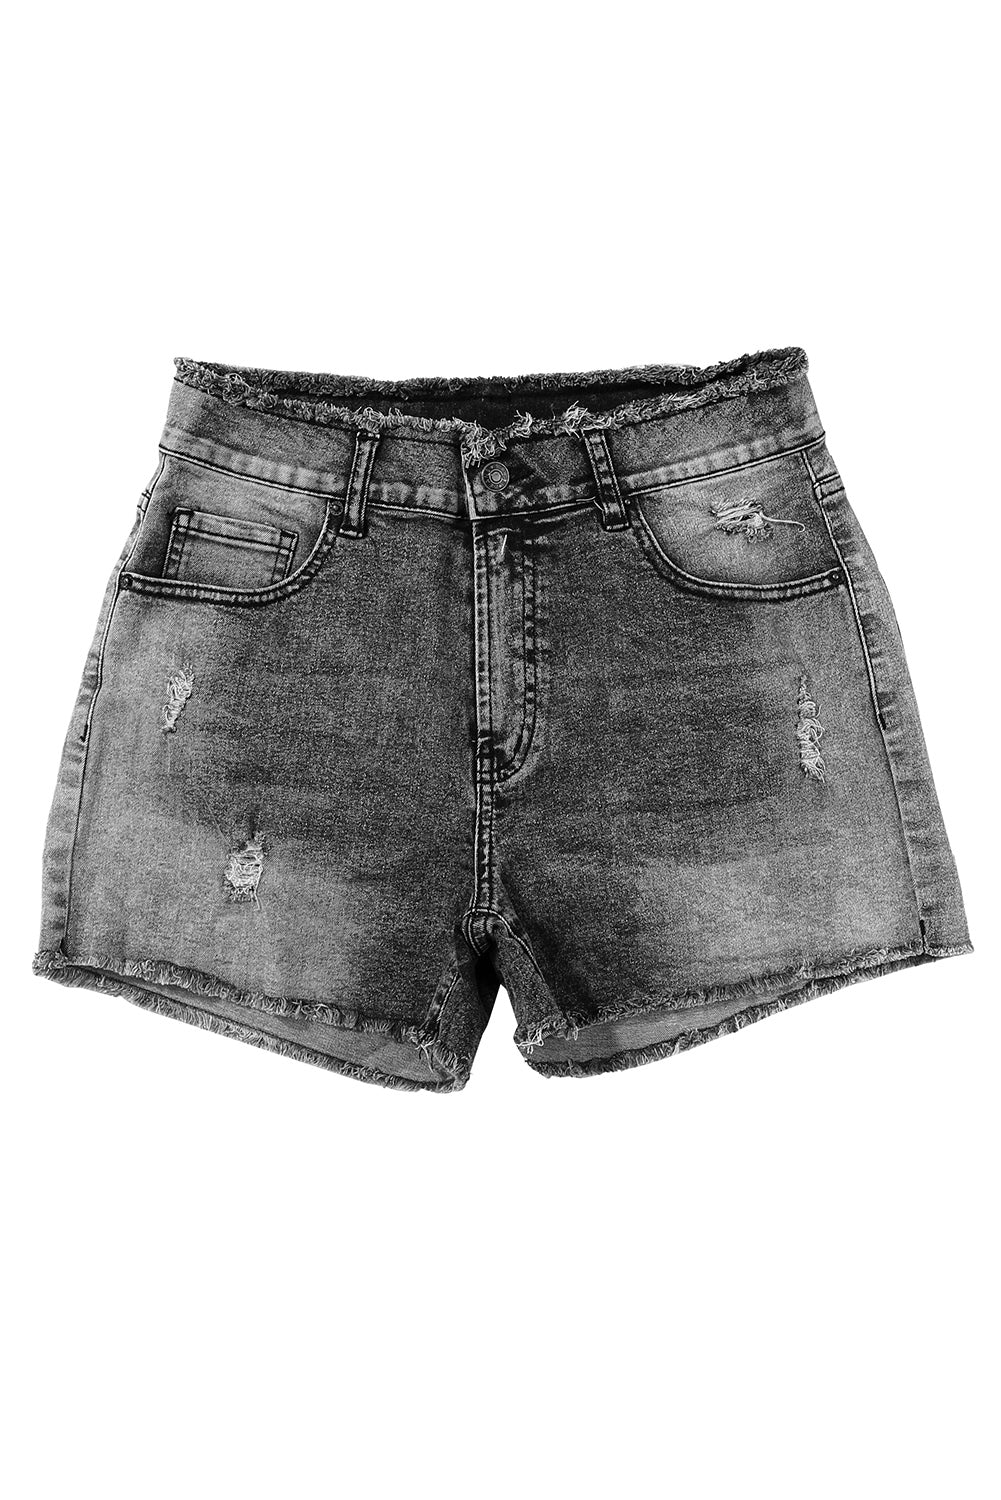 Gray Acid Wash Raw Edge Skinny Denim Shorts